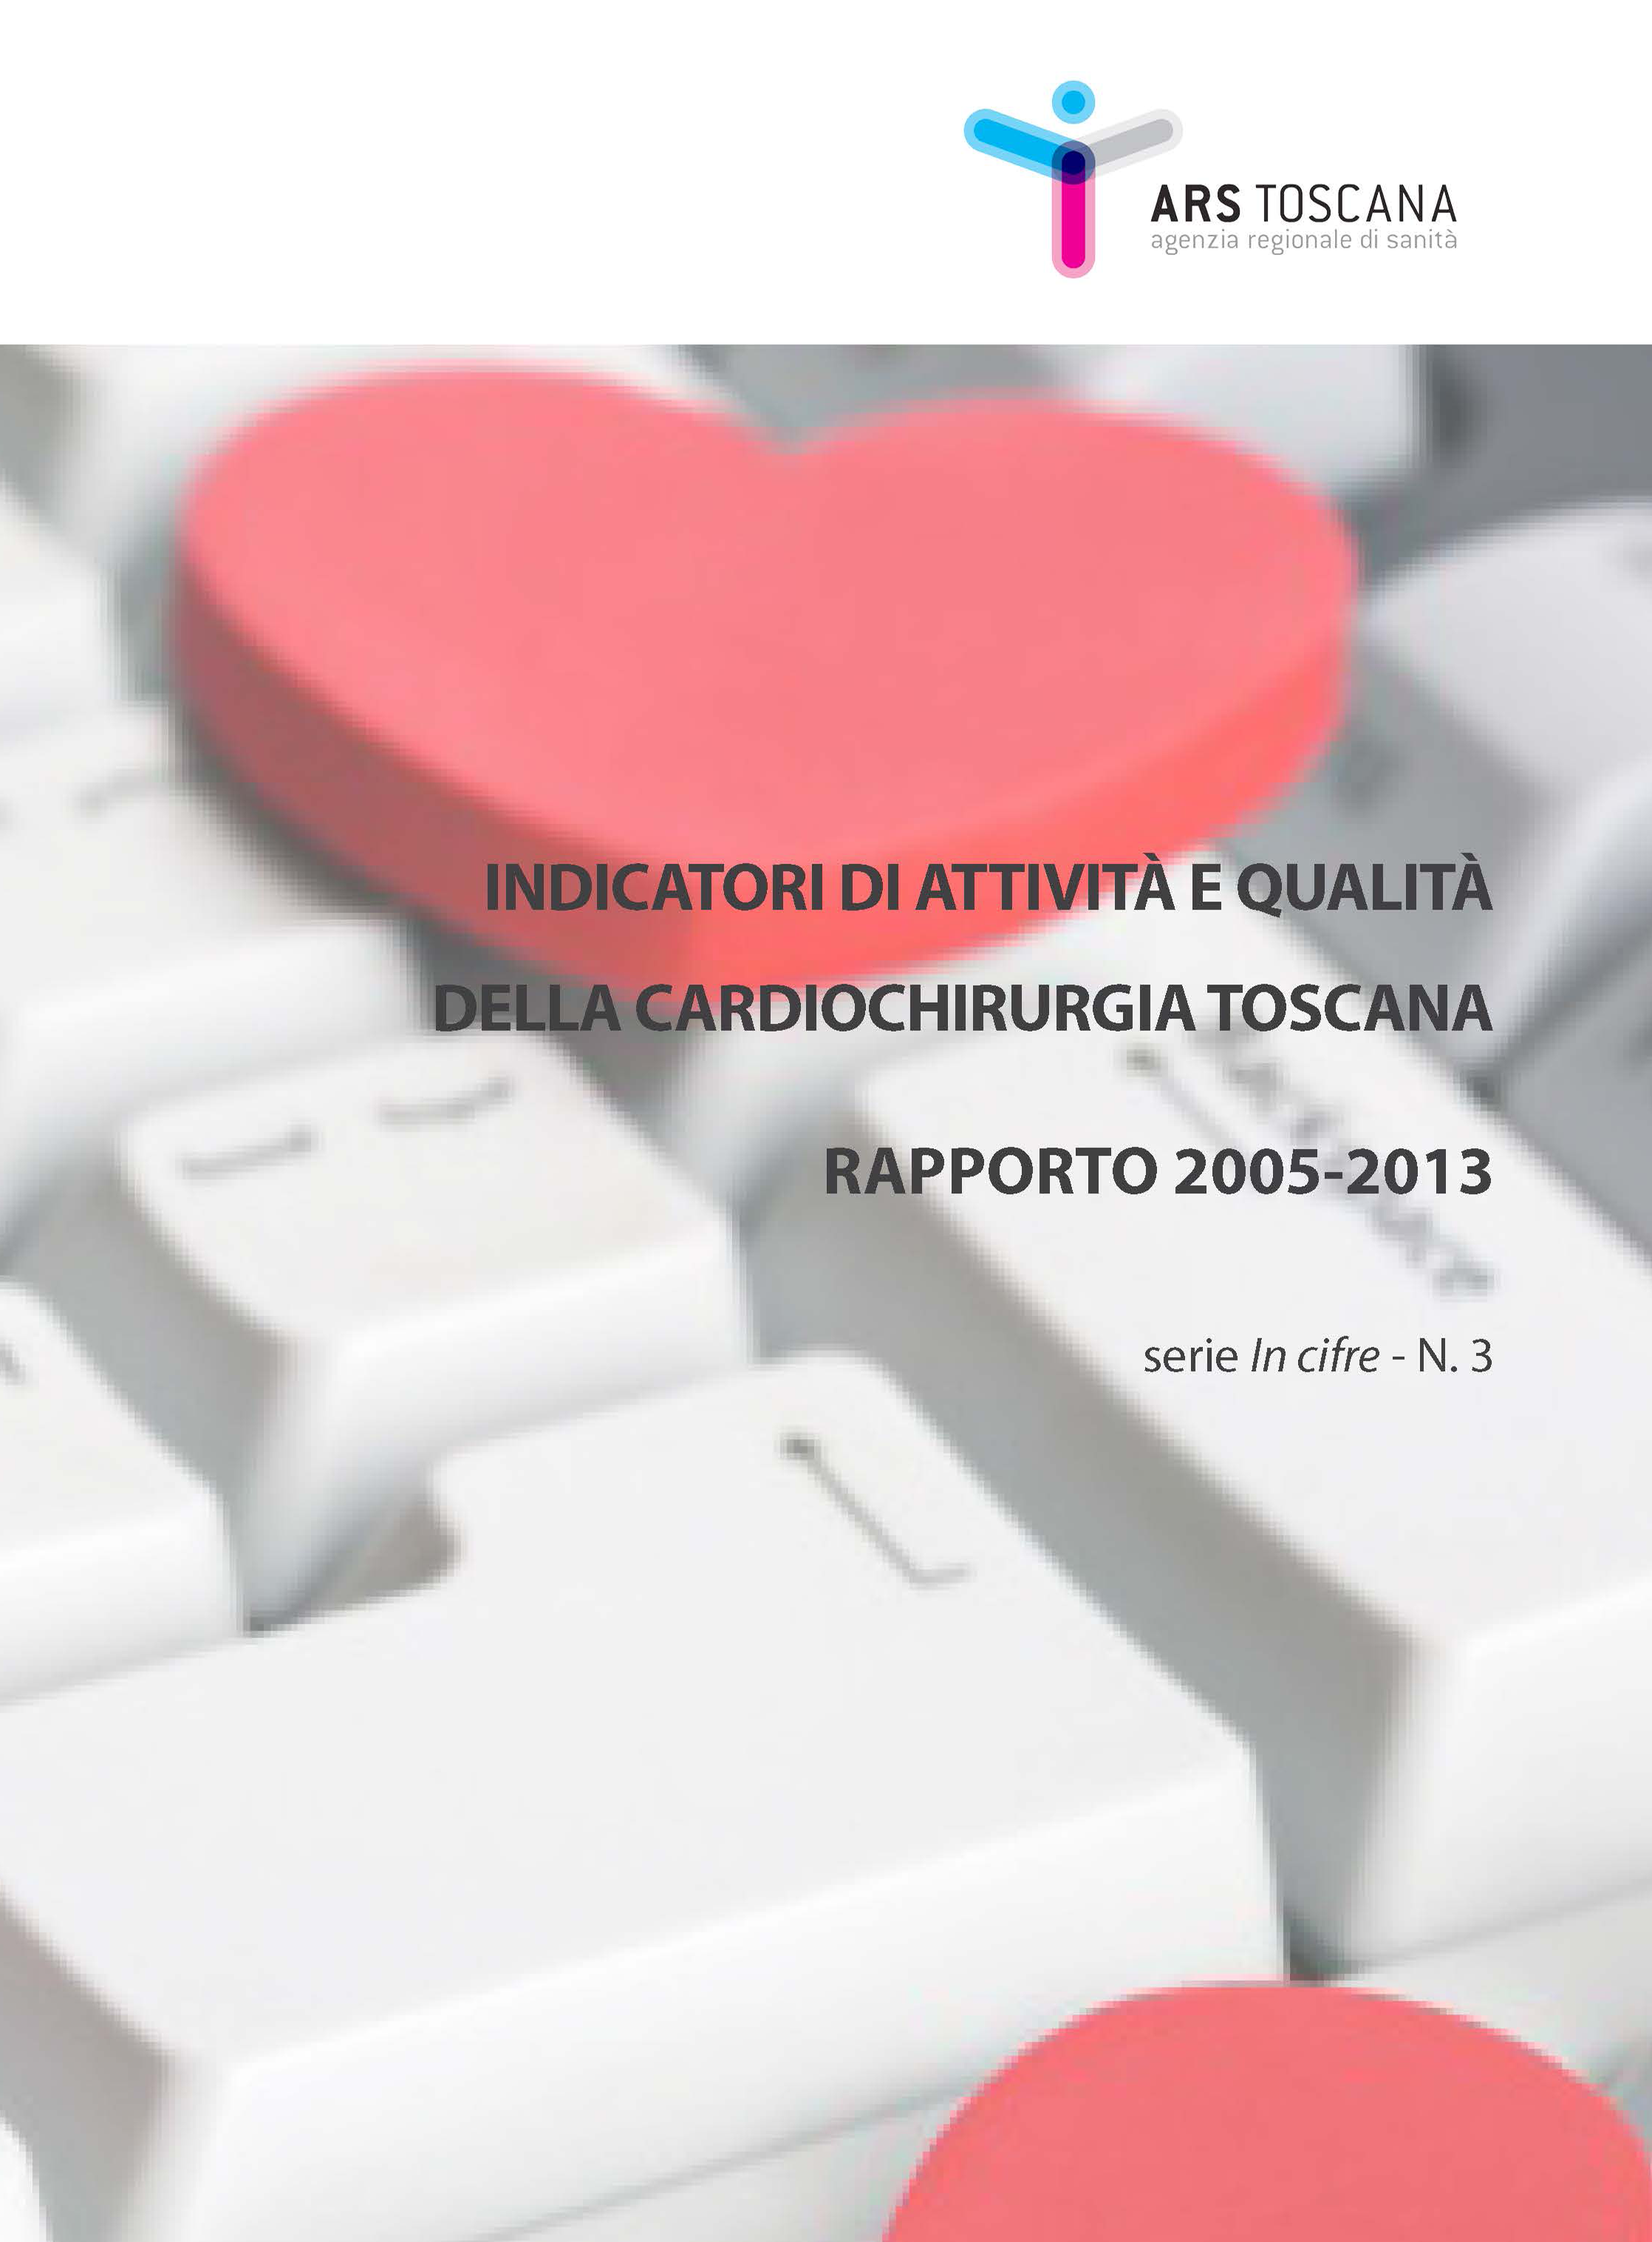 Indicatori di attività e qualità della Cardiochirurgia toscana - Rapporto 2005-2013